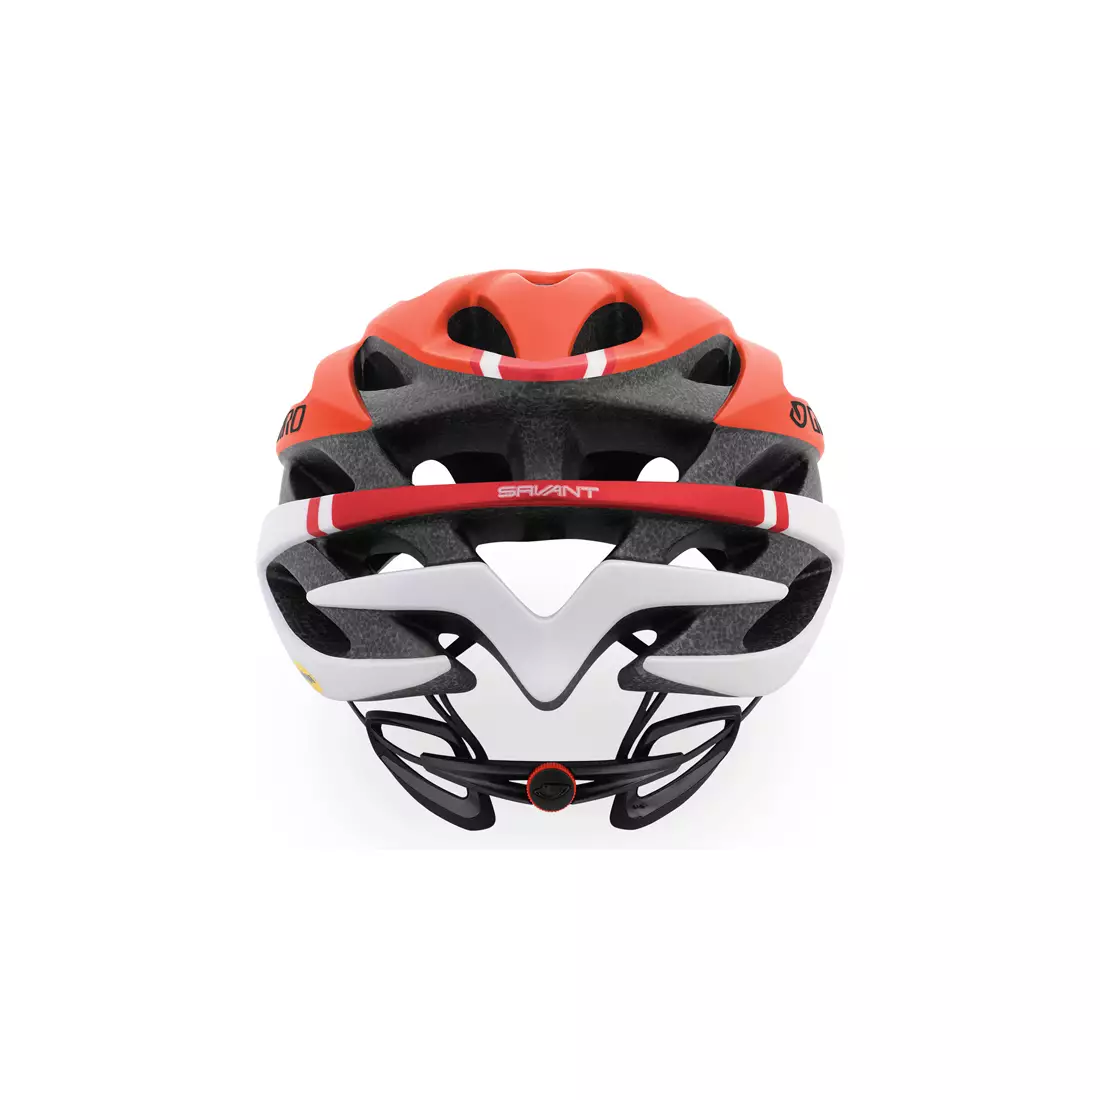 GIRO SAVANT MIPS - red bicycle helmet